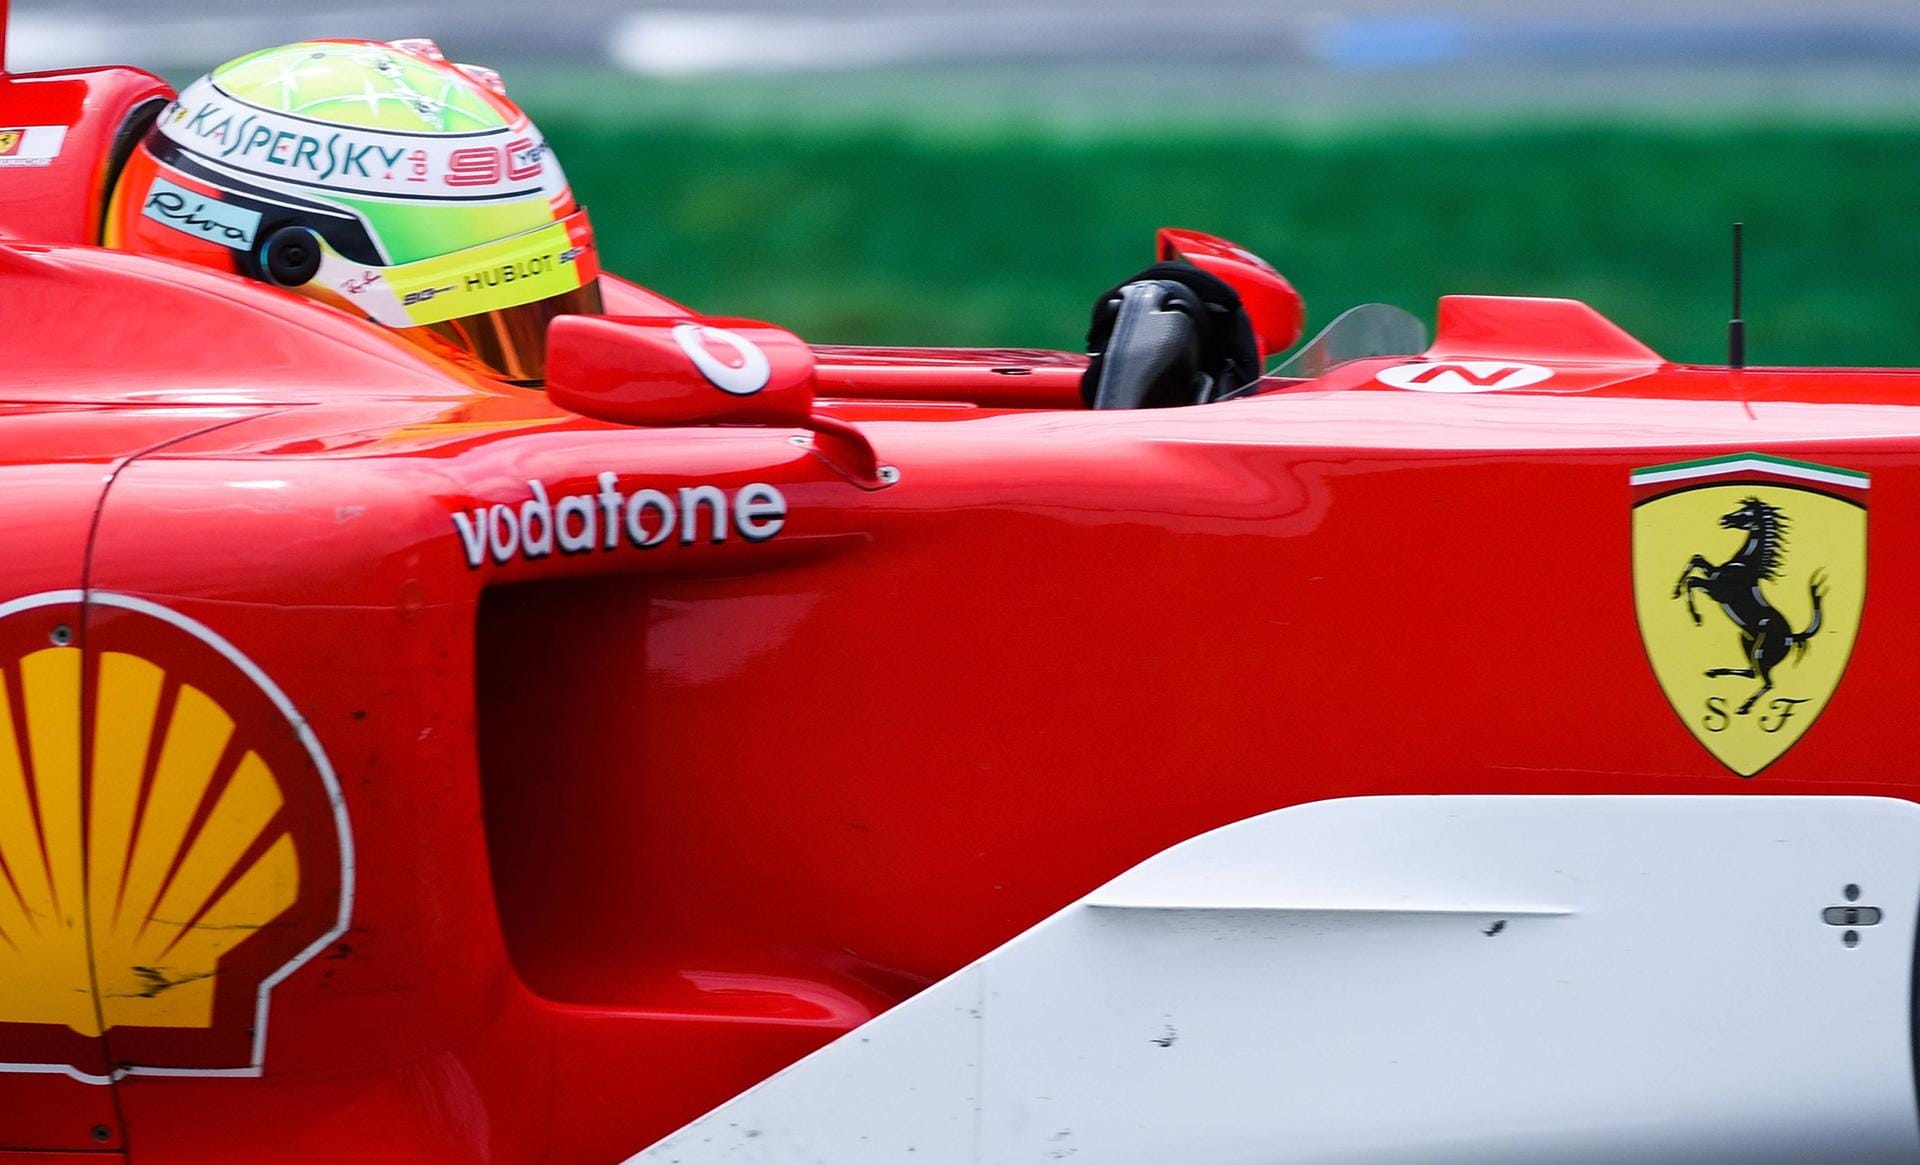 Motorsport-Weltverbandspräsident Jean Todt, der bei Ferrari Teamchef von Michael Schumacher war, äußerte sich lobend über den Sohn des Formel-1-Idols. «Ich wünsche ihm die beste Zukunft, er ist ein toller Junge mit einer sehr netten Persönlichkeit und er liebt Rennfahren», sagte Todt.